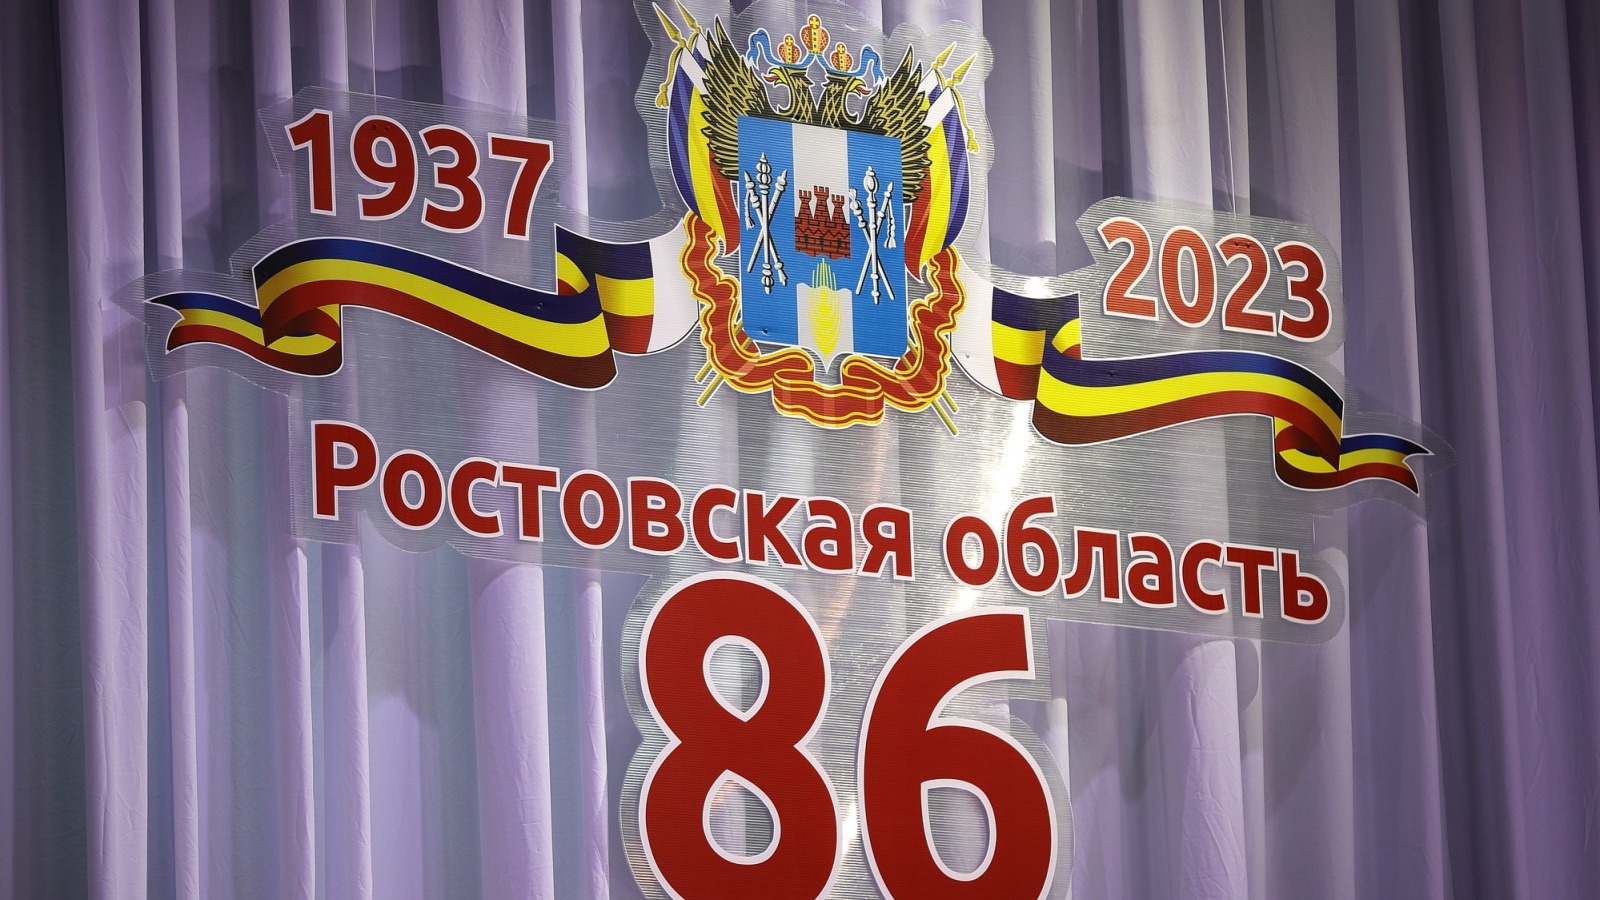 Ростовская область отмечает 86 лет со дня основания